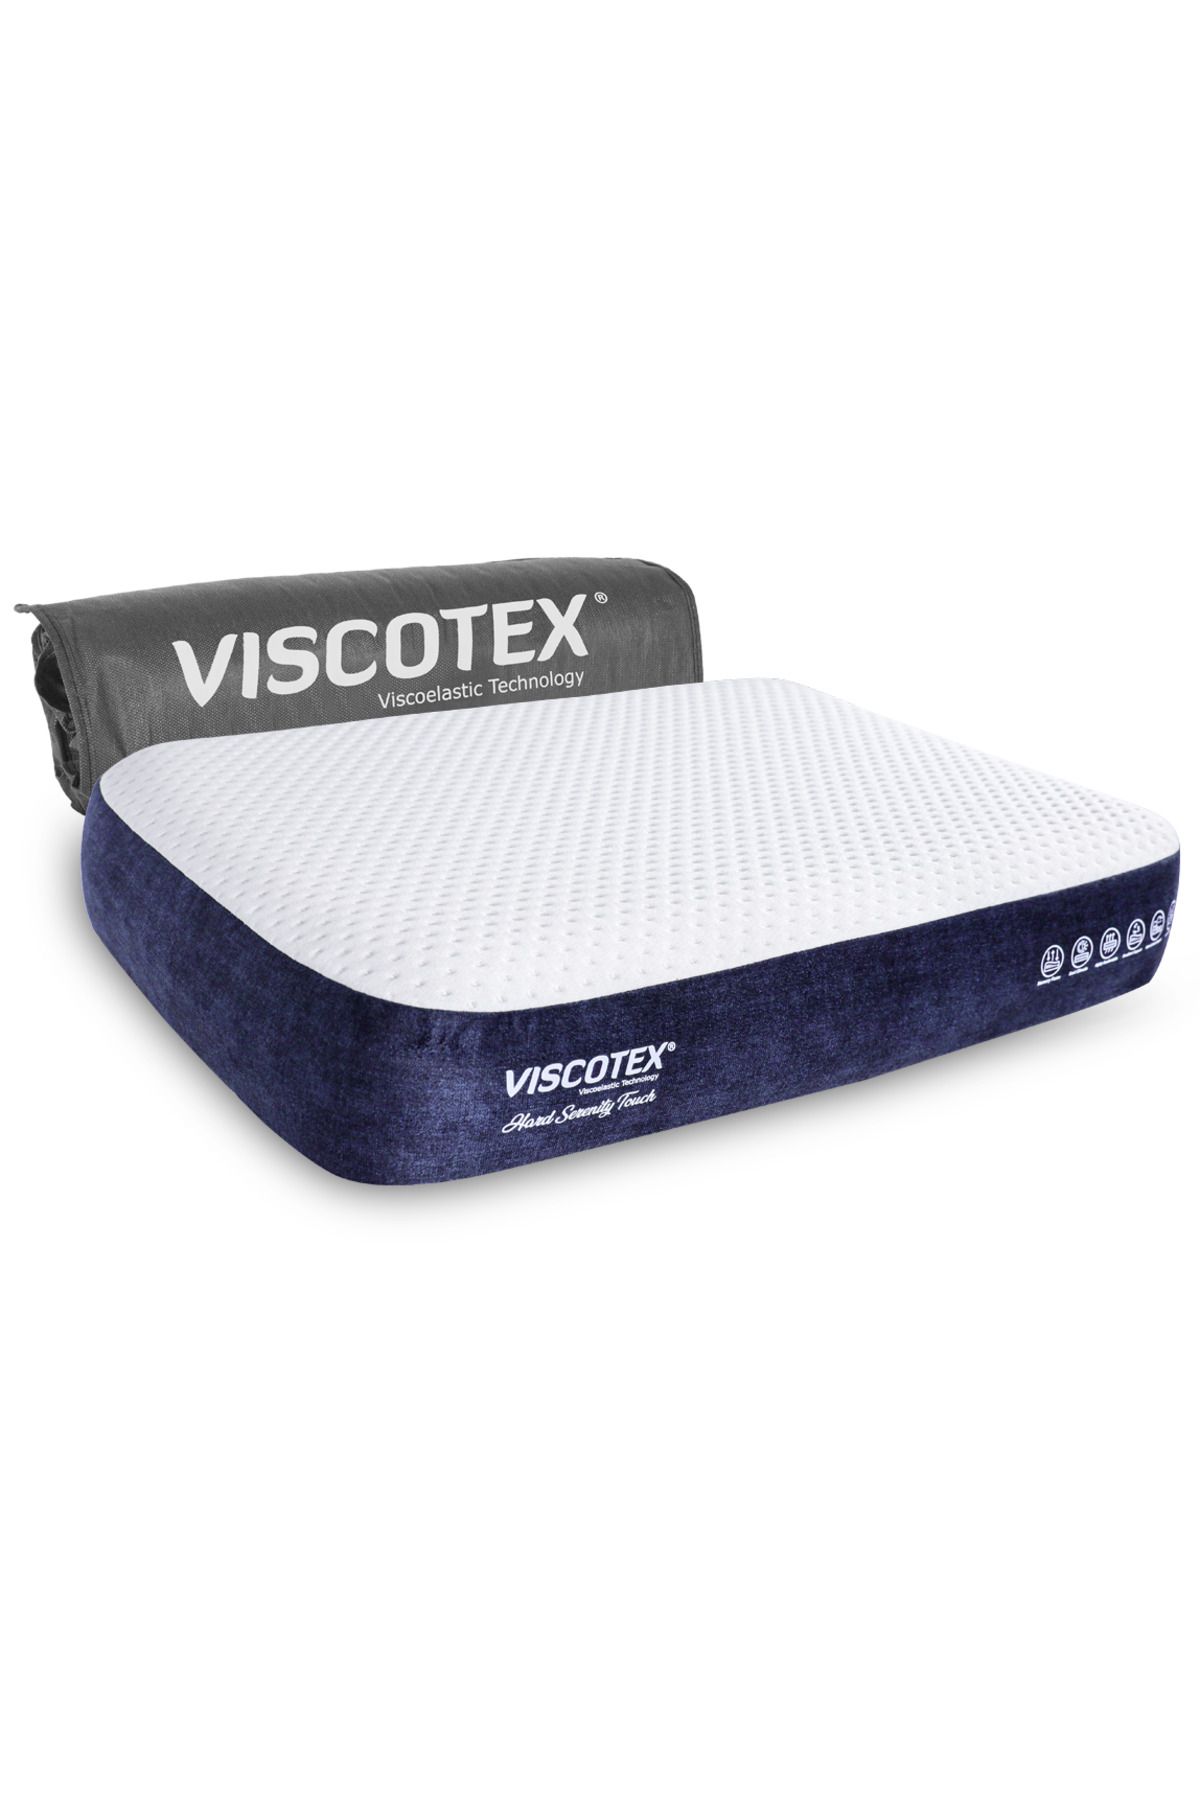 VİSCOTEX Hard Serenity Ergonomik Visco Yastık 65x43x12cm, Boyun Ağrıları Için Sert Hafızalı Baş Yastığı